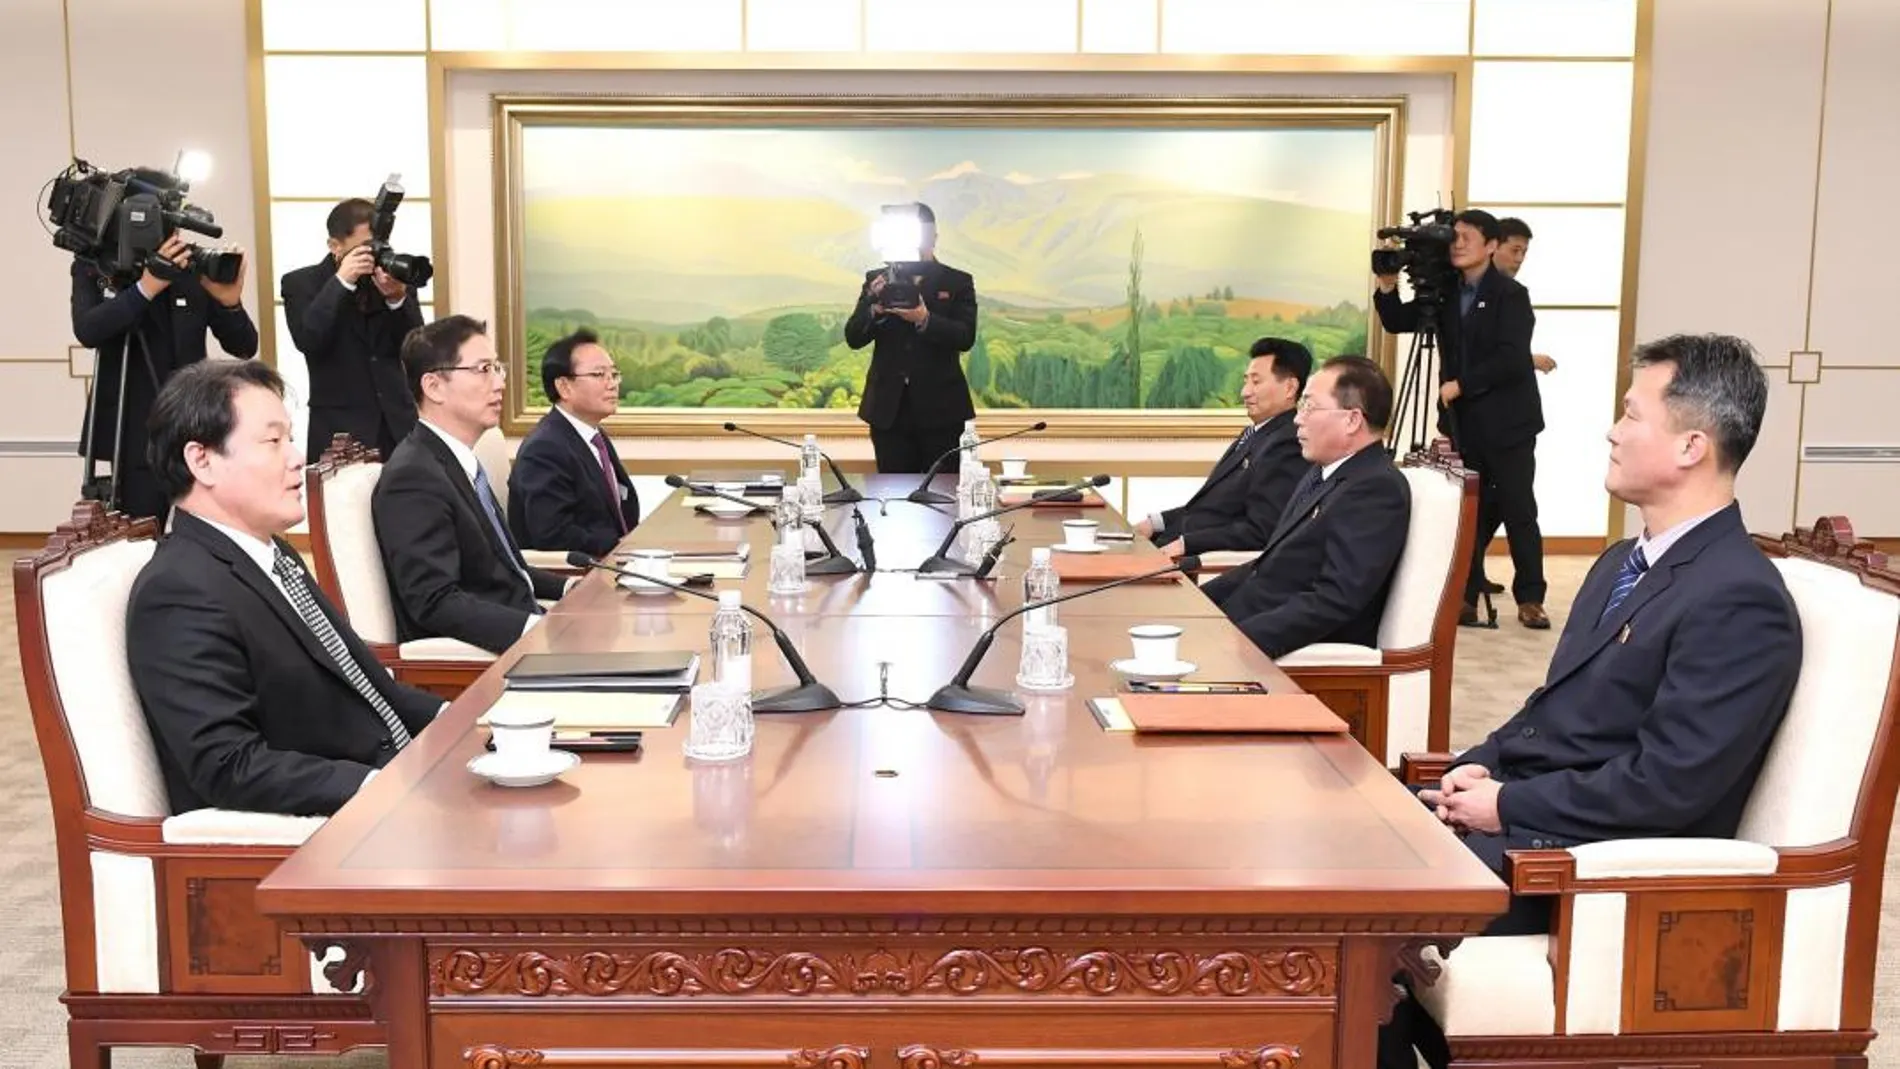 El delegado jefe de Corea del Norte Jon Jong-su (2d) durante una reunión con el delegado jefe de Corea del Sur y viceministro de unificación Chun Hae-sung